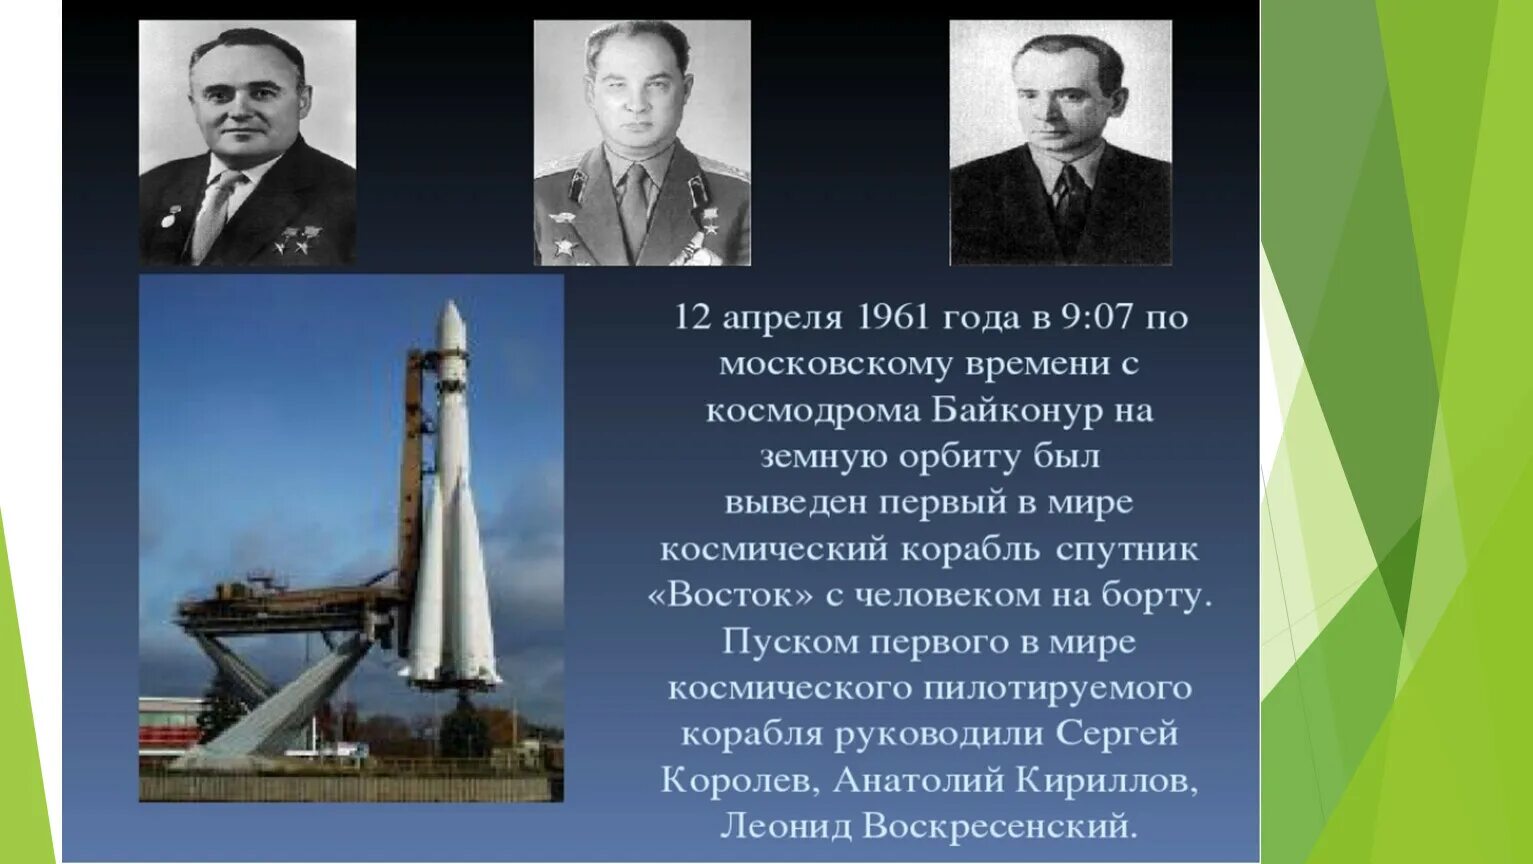 Конструкторы ракет в ссср. Королев косми́ческий кора́бль «Восто́к-1».